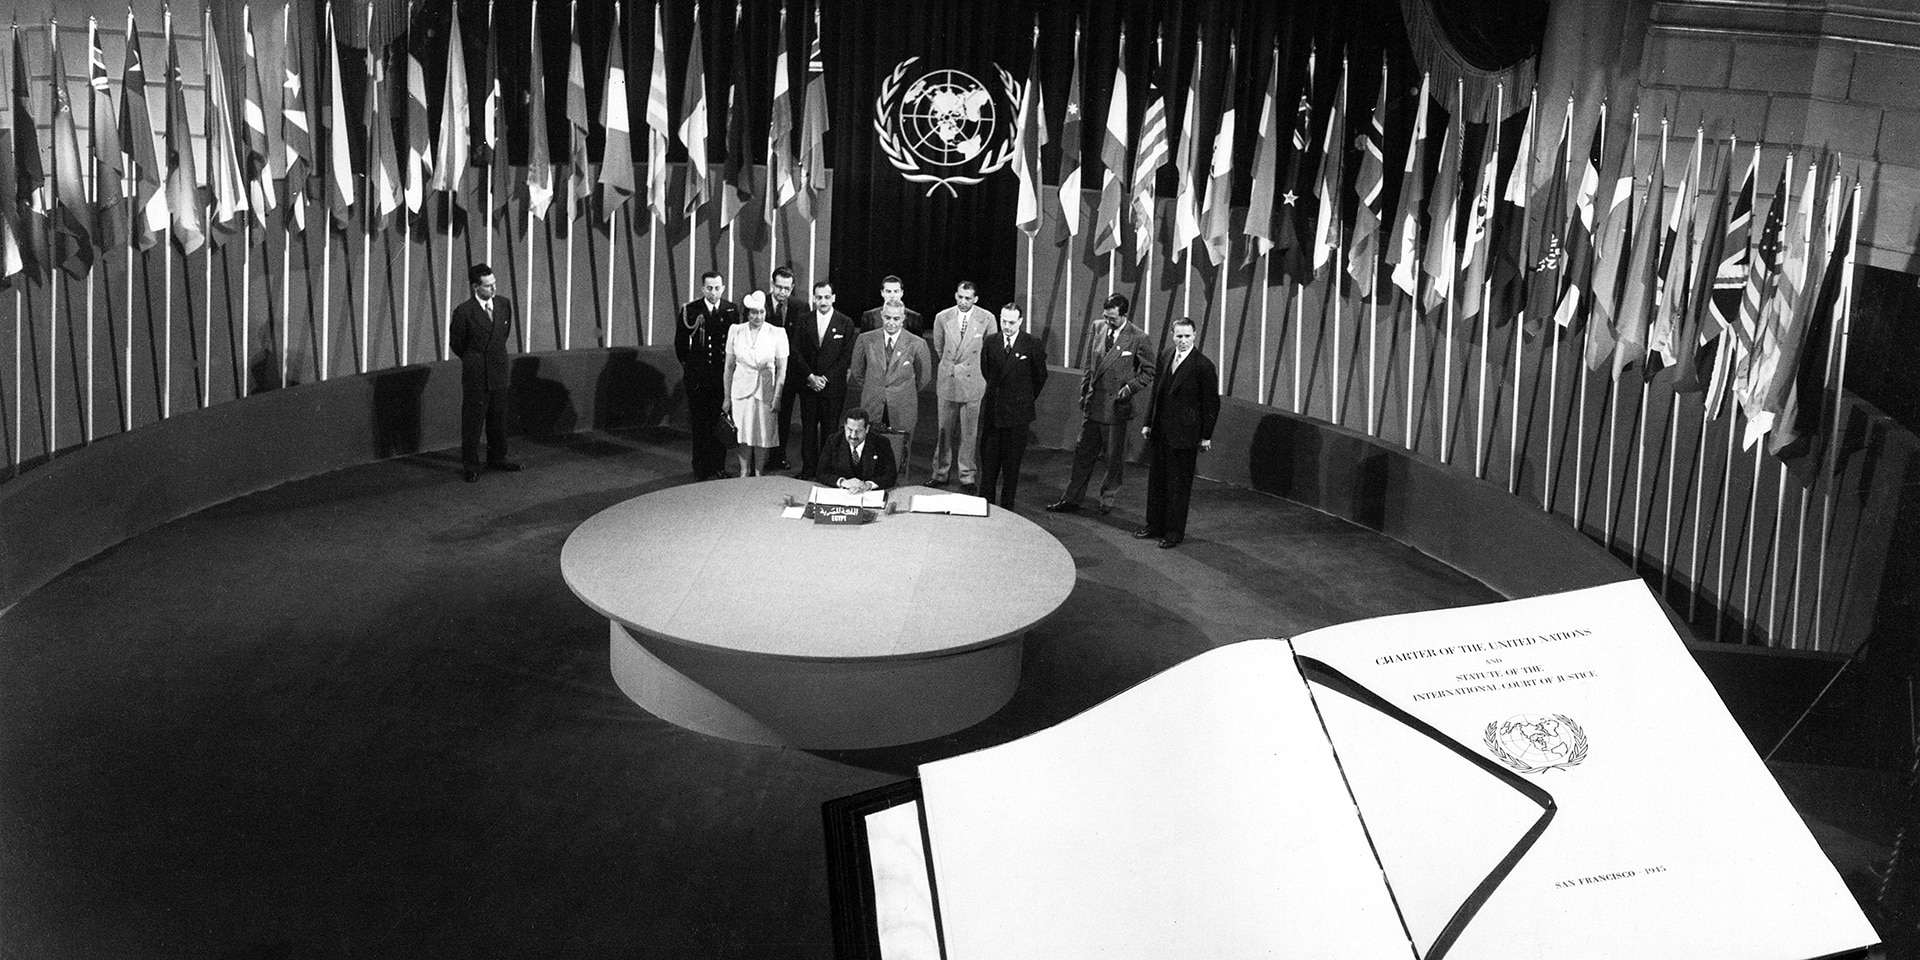  L’Egitto mentre firma la Carta delle Nazioni Unite, con la Carta in primo piano. 